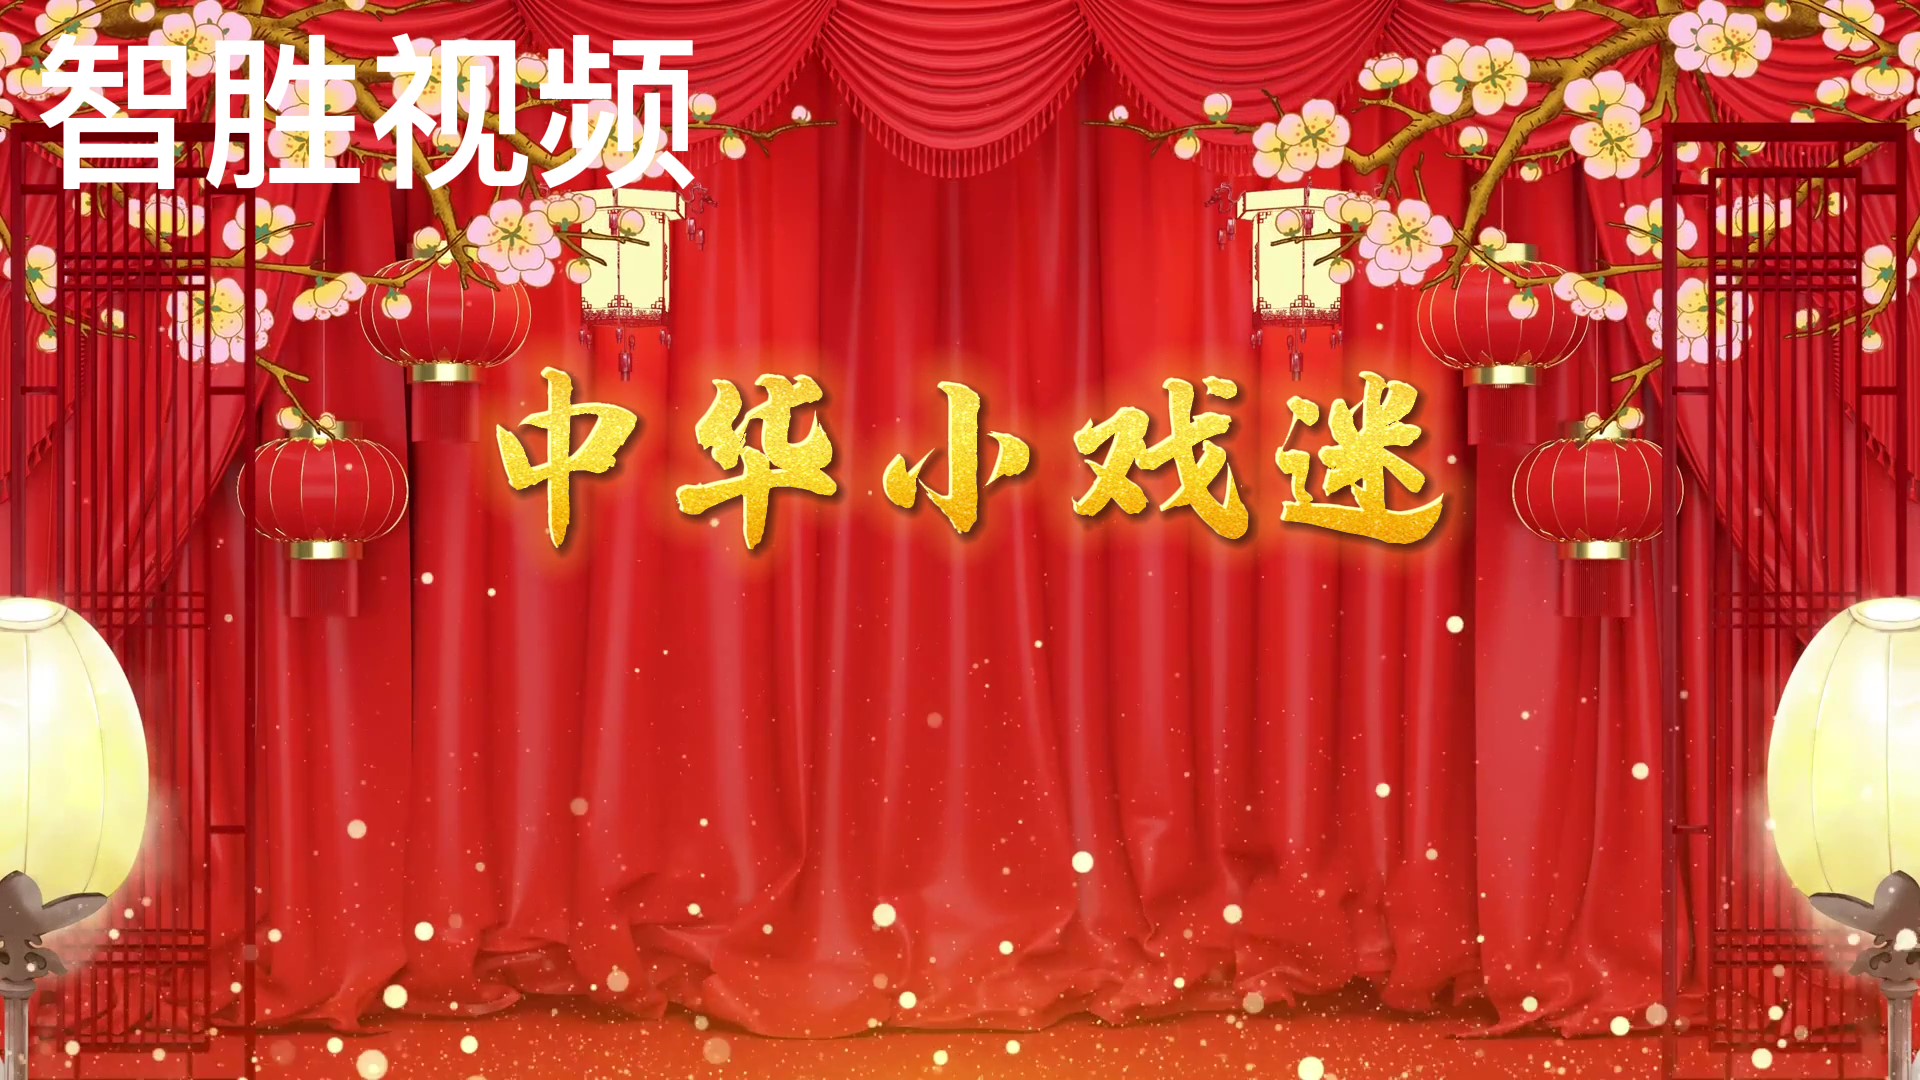 中华小戏迷歌曲配乐戏曲京剧脸谱舞台舞蹈大屏LED背景视频